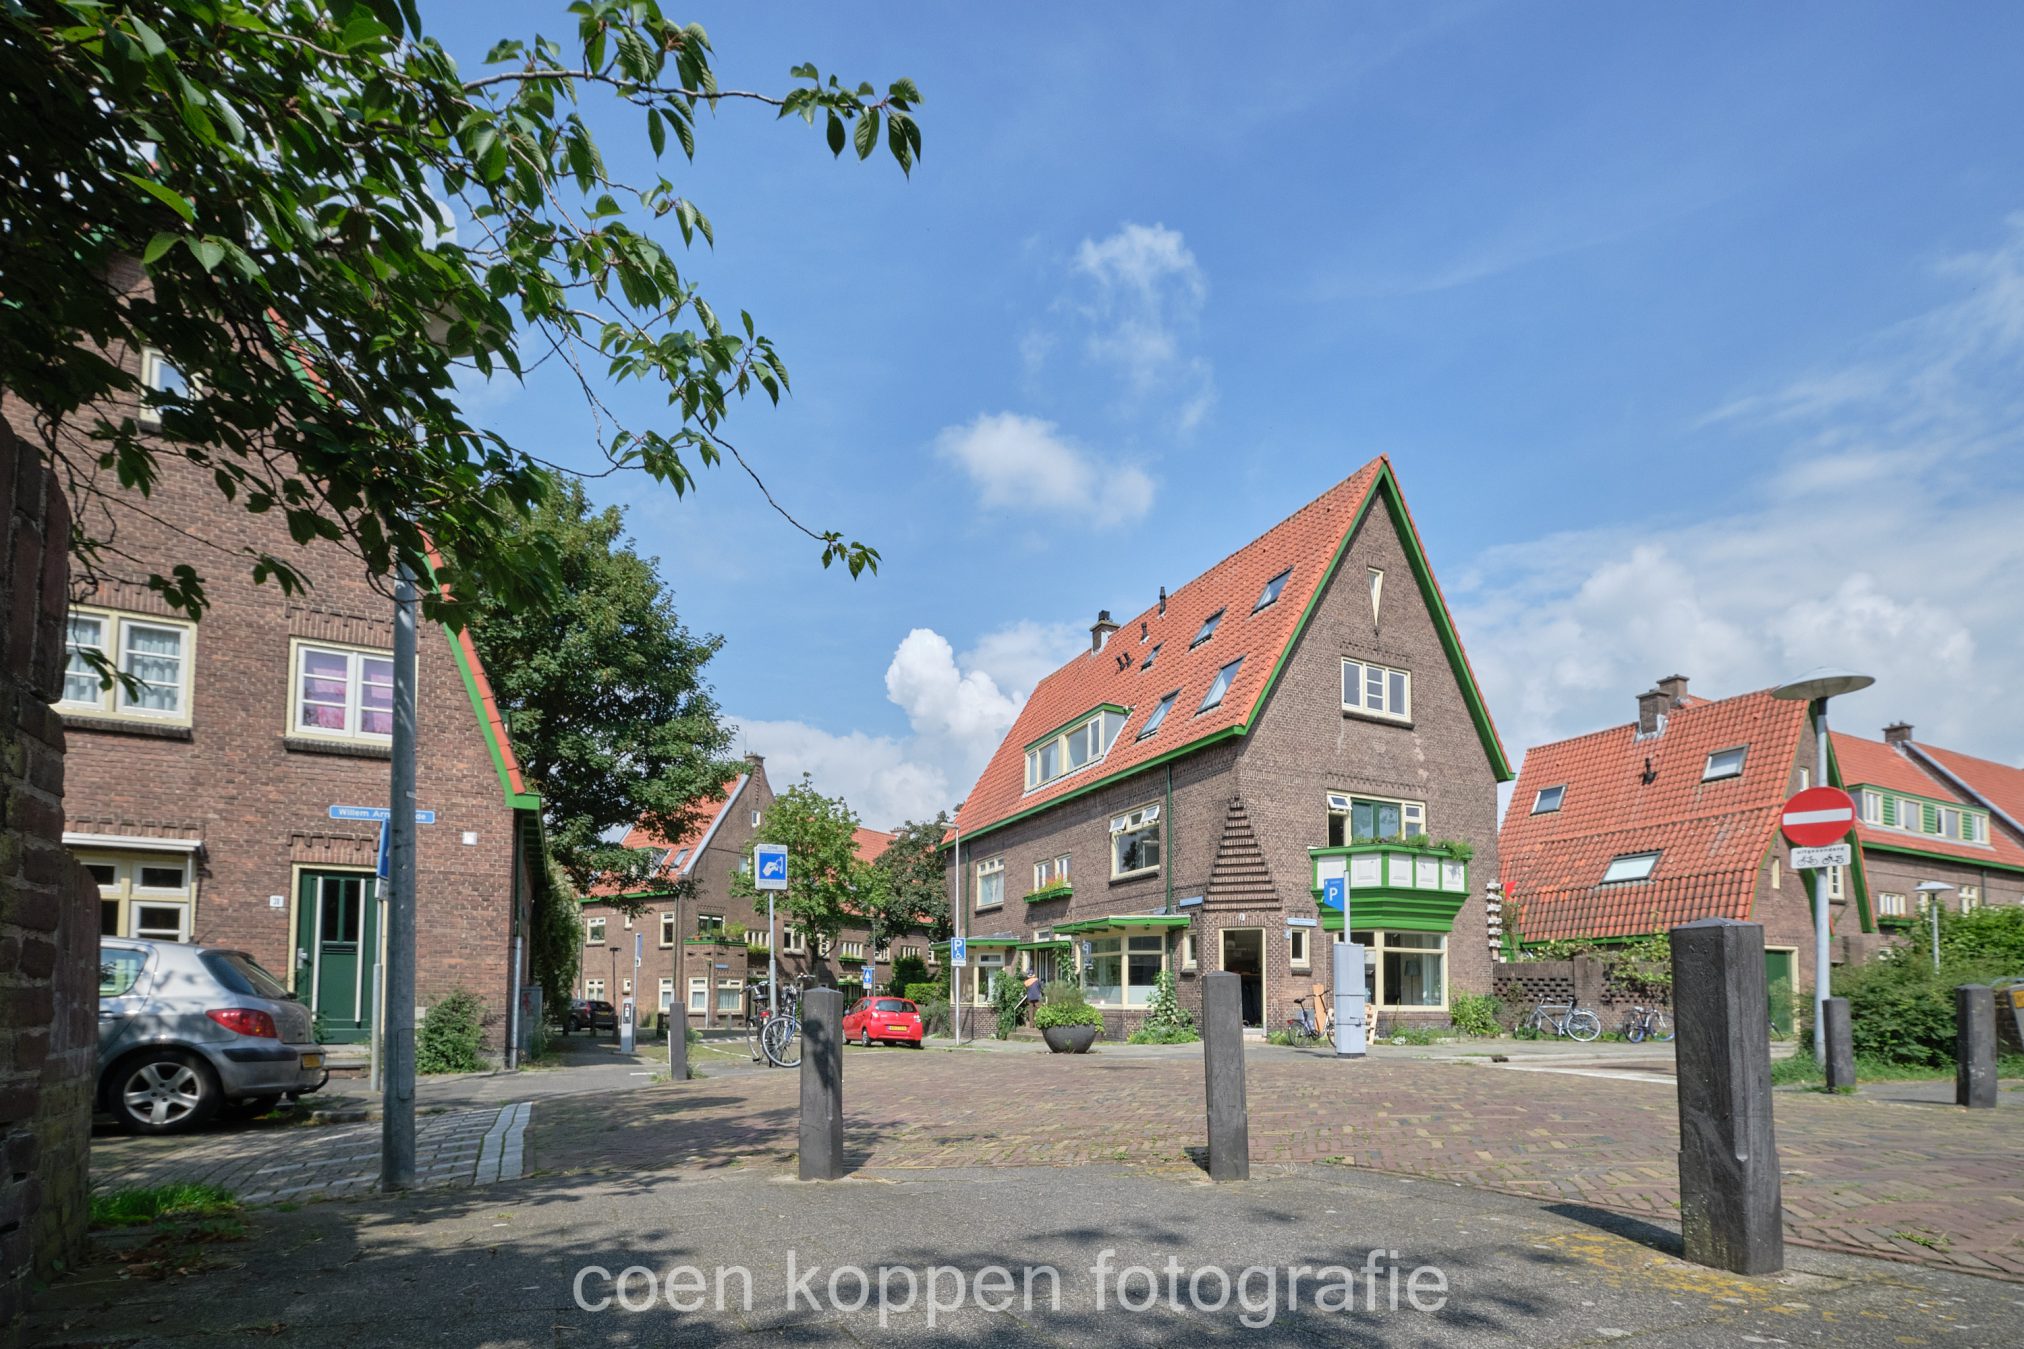 Zicht op hoek Melis Stokesstraat in Tuinwijk Utrecht - Coen Koppen Fotografie